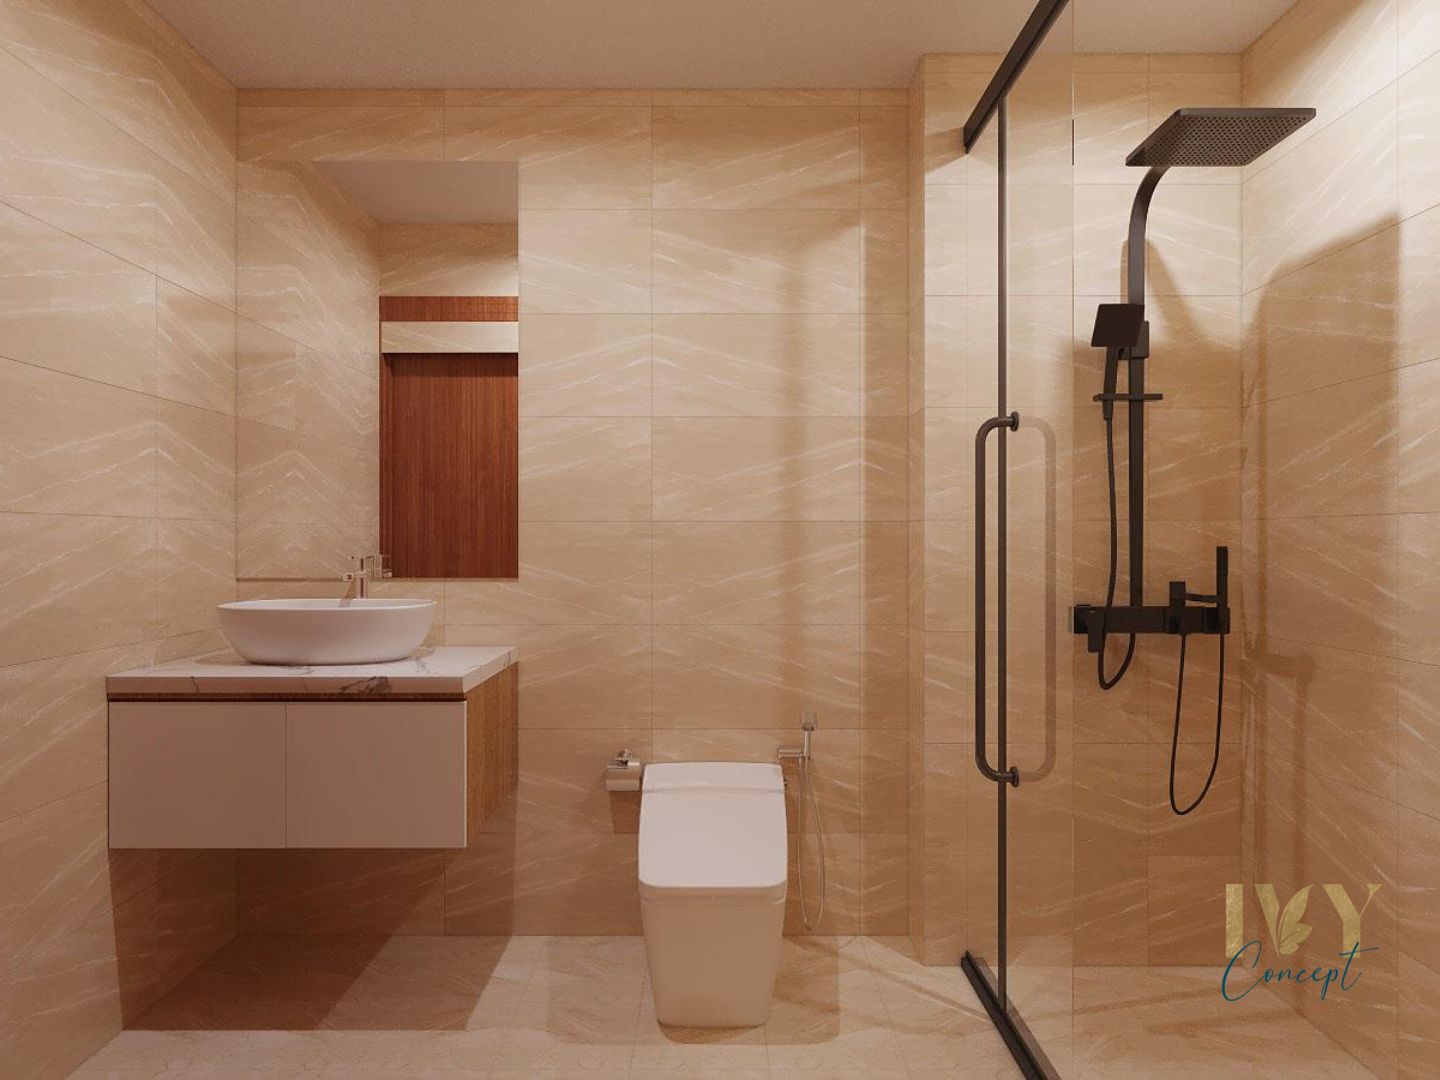 Phòng tắm, nhà vệ sinh, phong cách Hiện đại Modern, thiết kế concept nội thất, căn hộ The CBD Premium Home